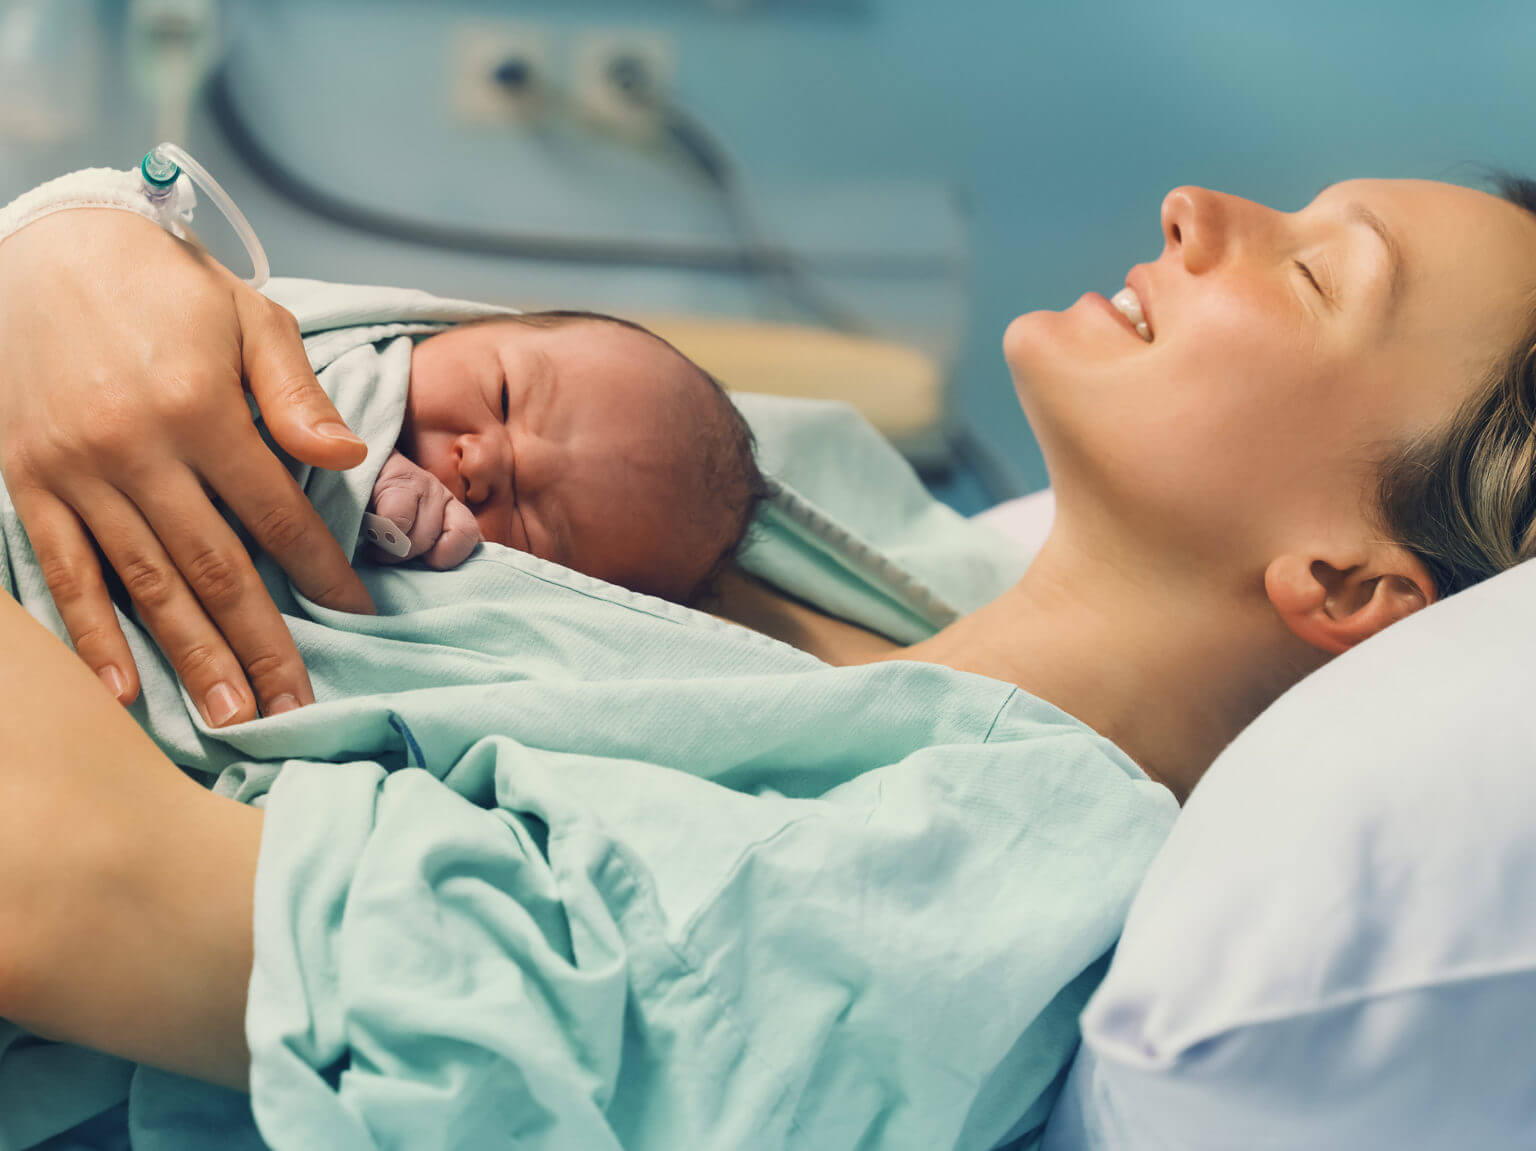 Ce este colostrul si de ce este important pentru nou-nascut